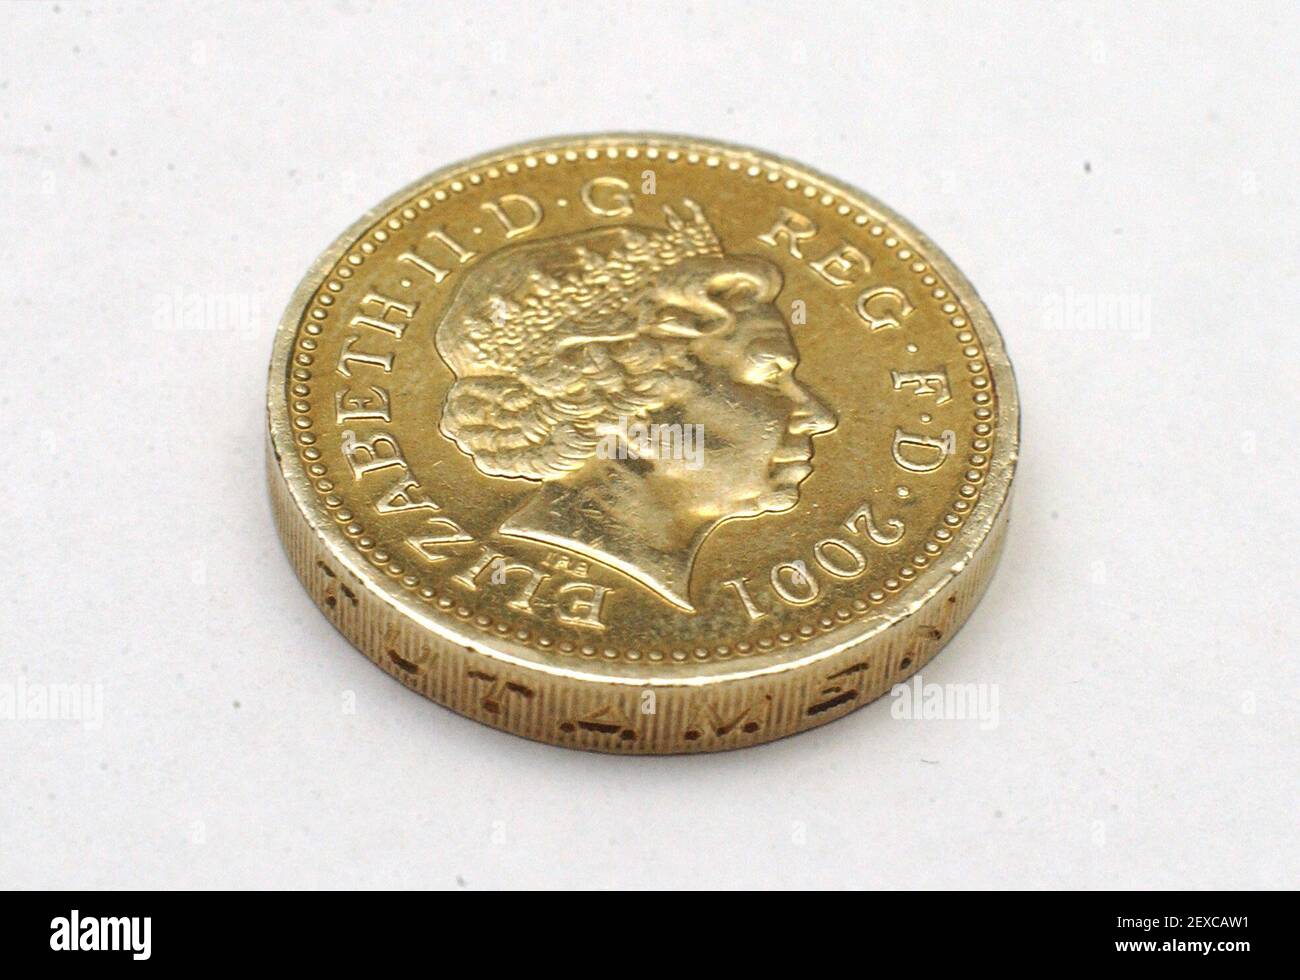 Der Kopf der Königin auf einer Pfund-Münze für Budget day,16 April 2002 Foto Andy Paradise Stockfoto